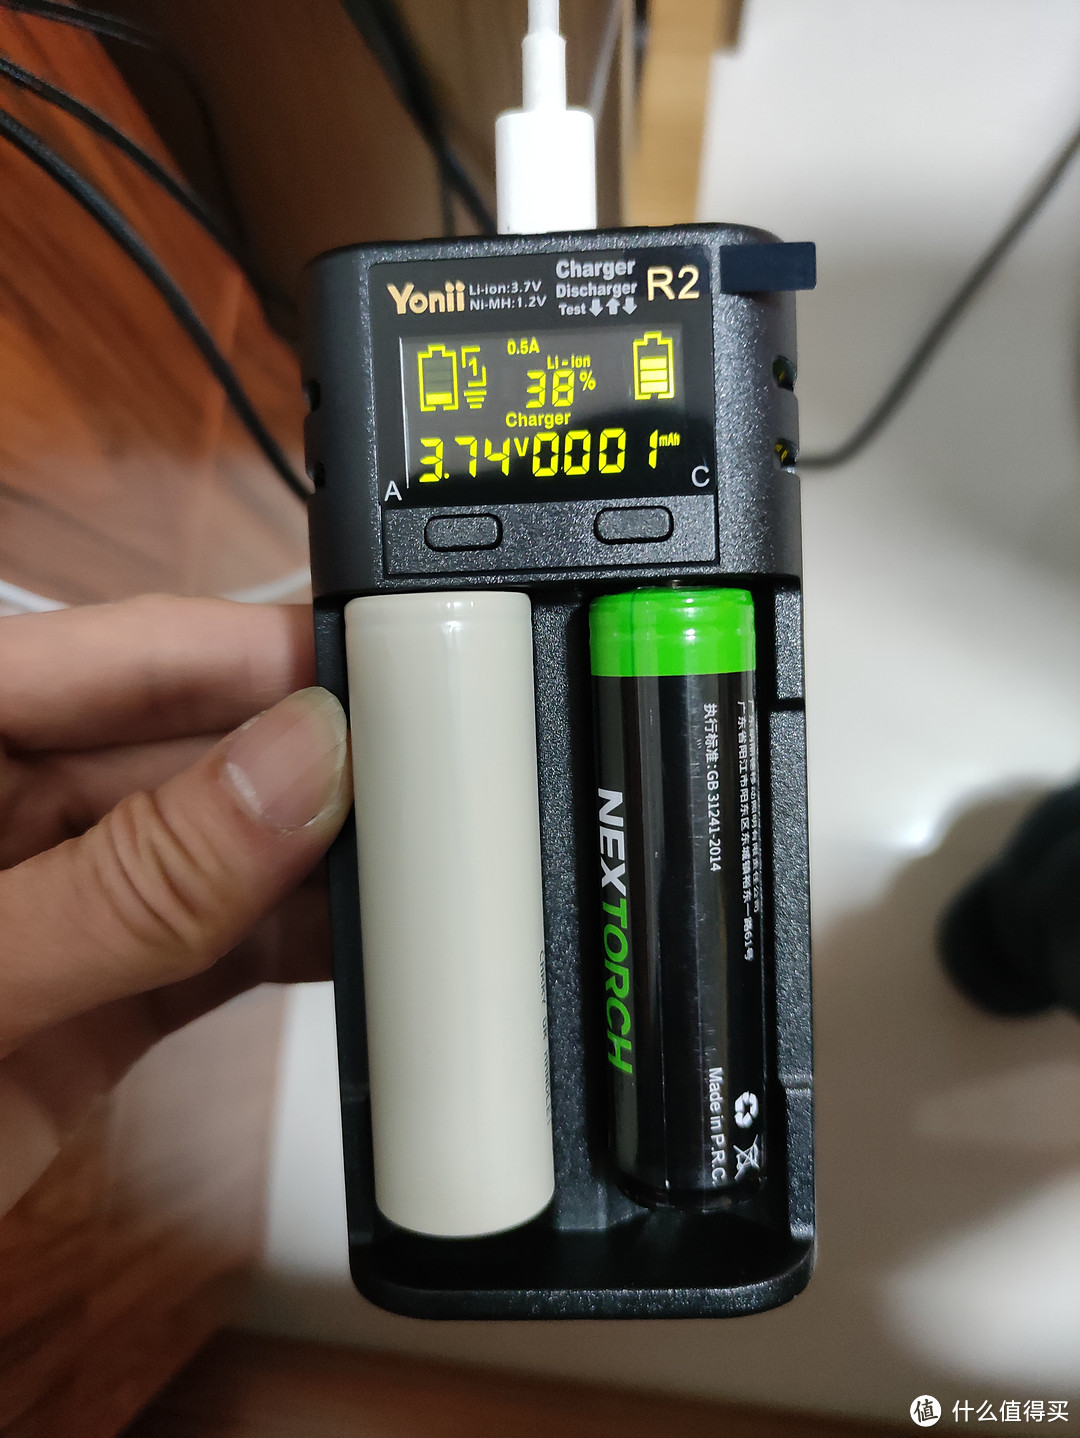 Yonii R2分容测试双卡槽18650充电器分享